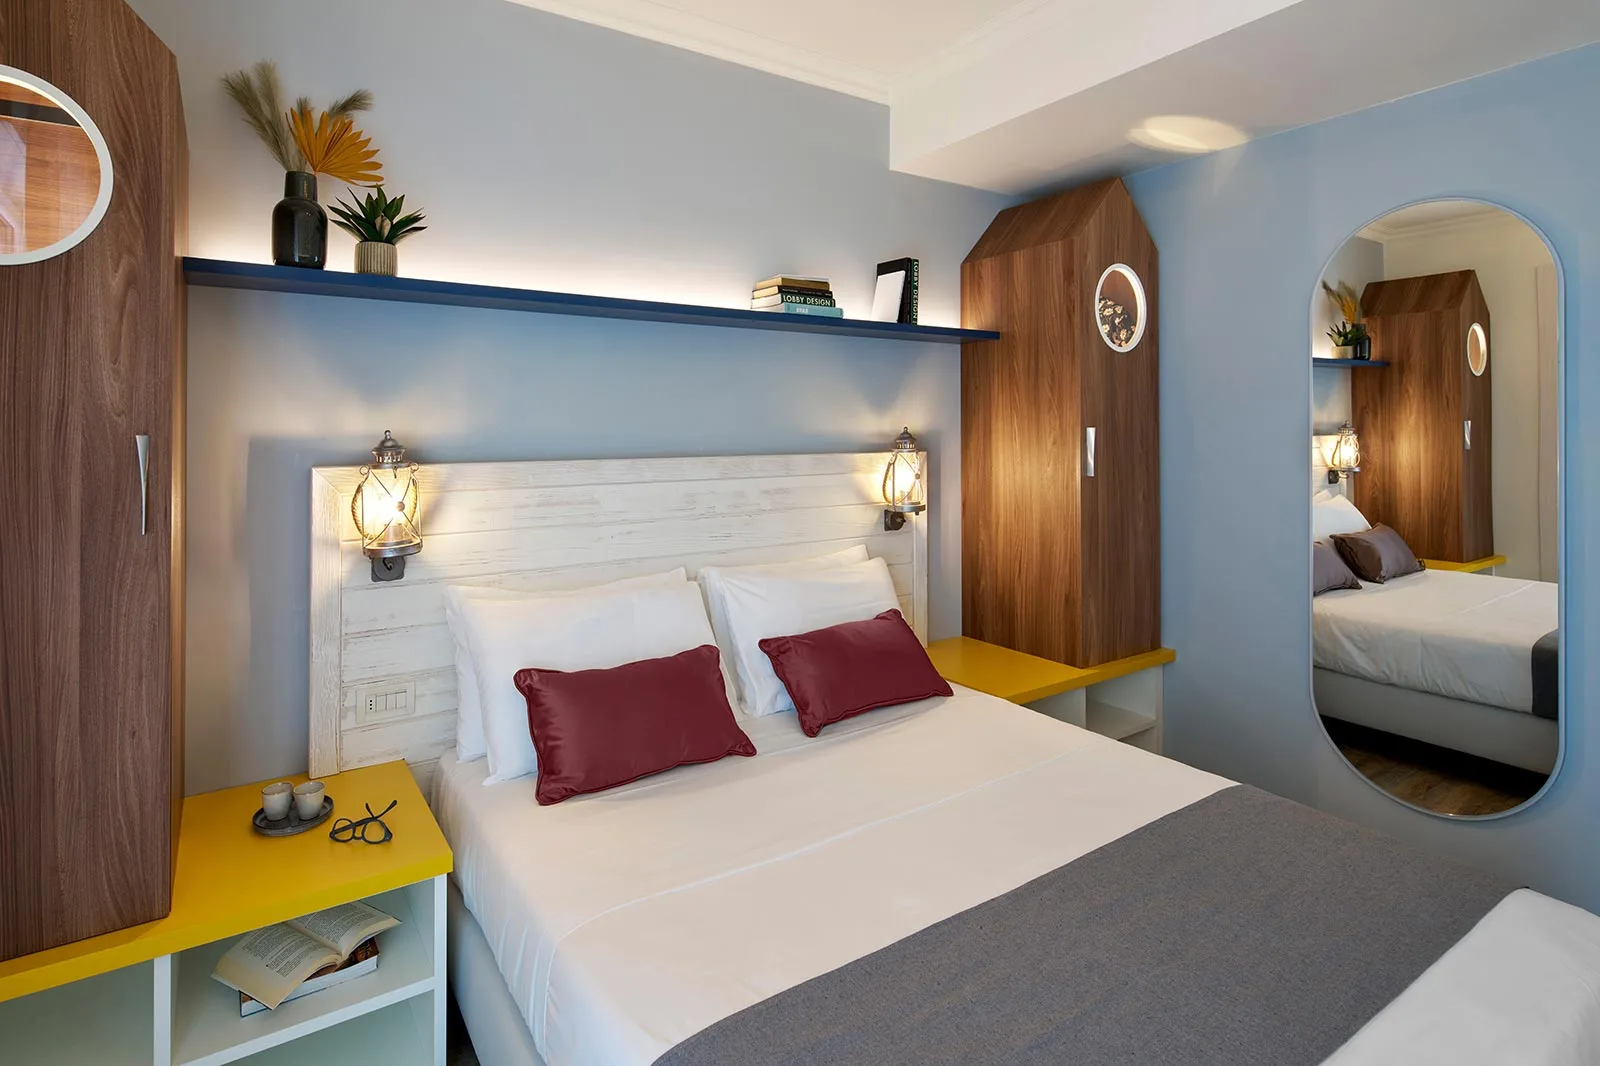 arredamento hotel nuovo concept vivace legno nautico